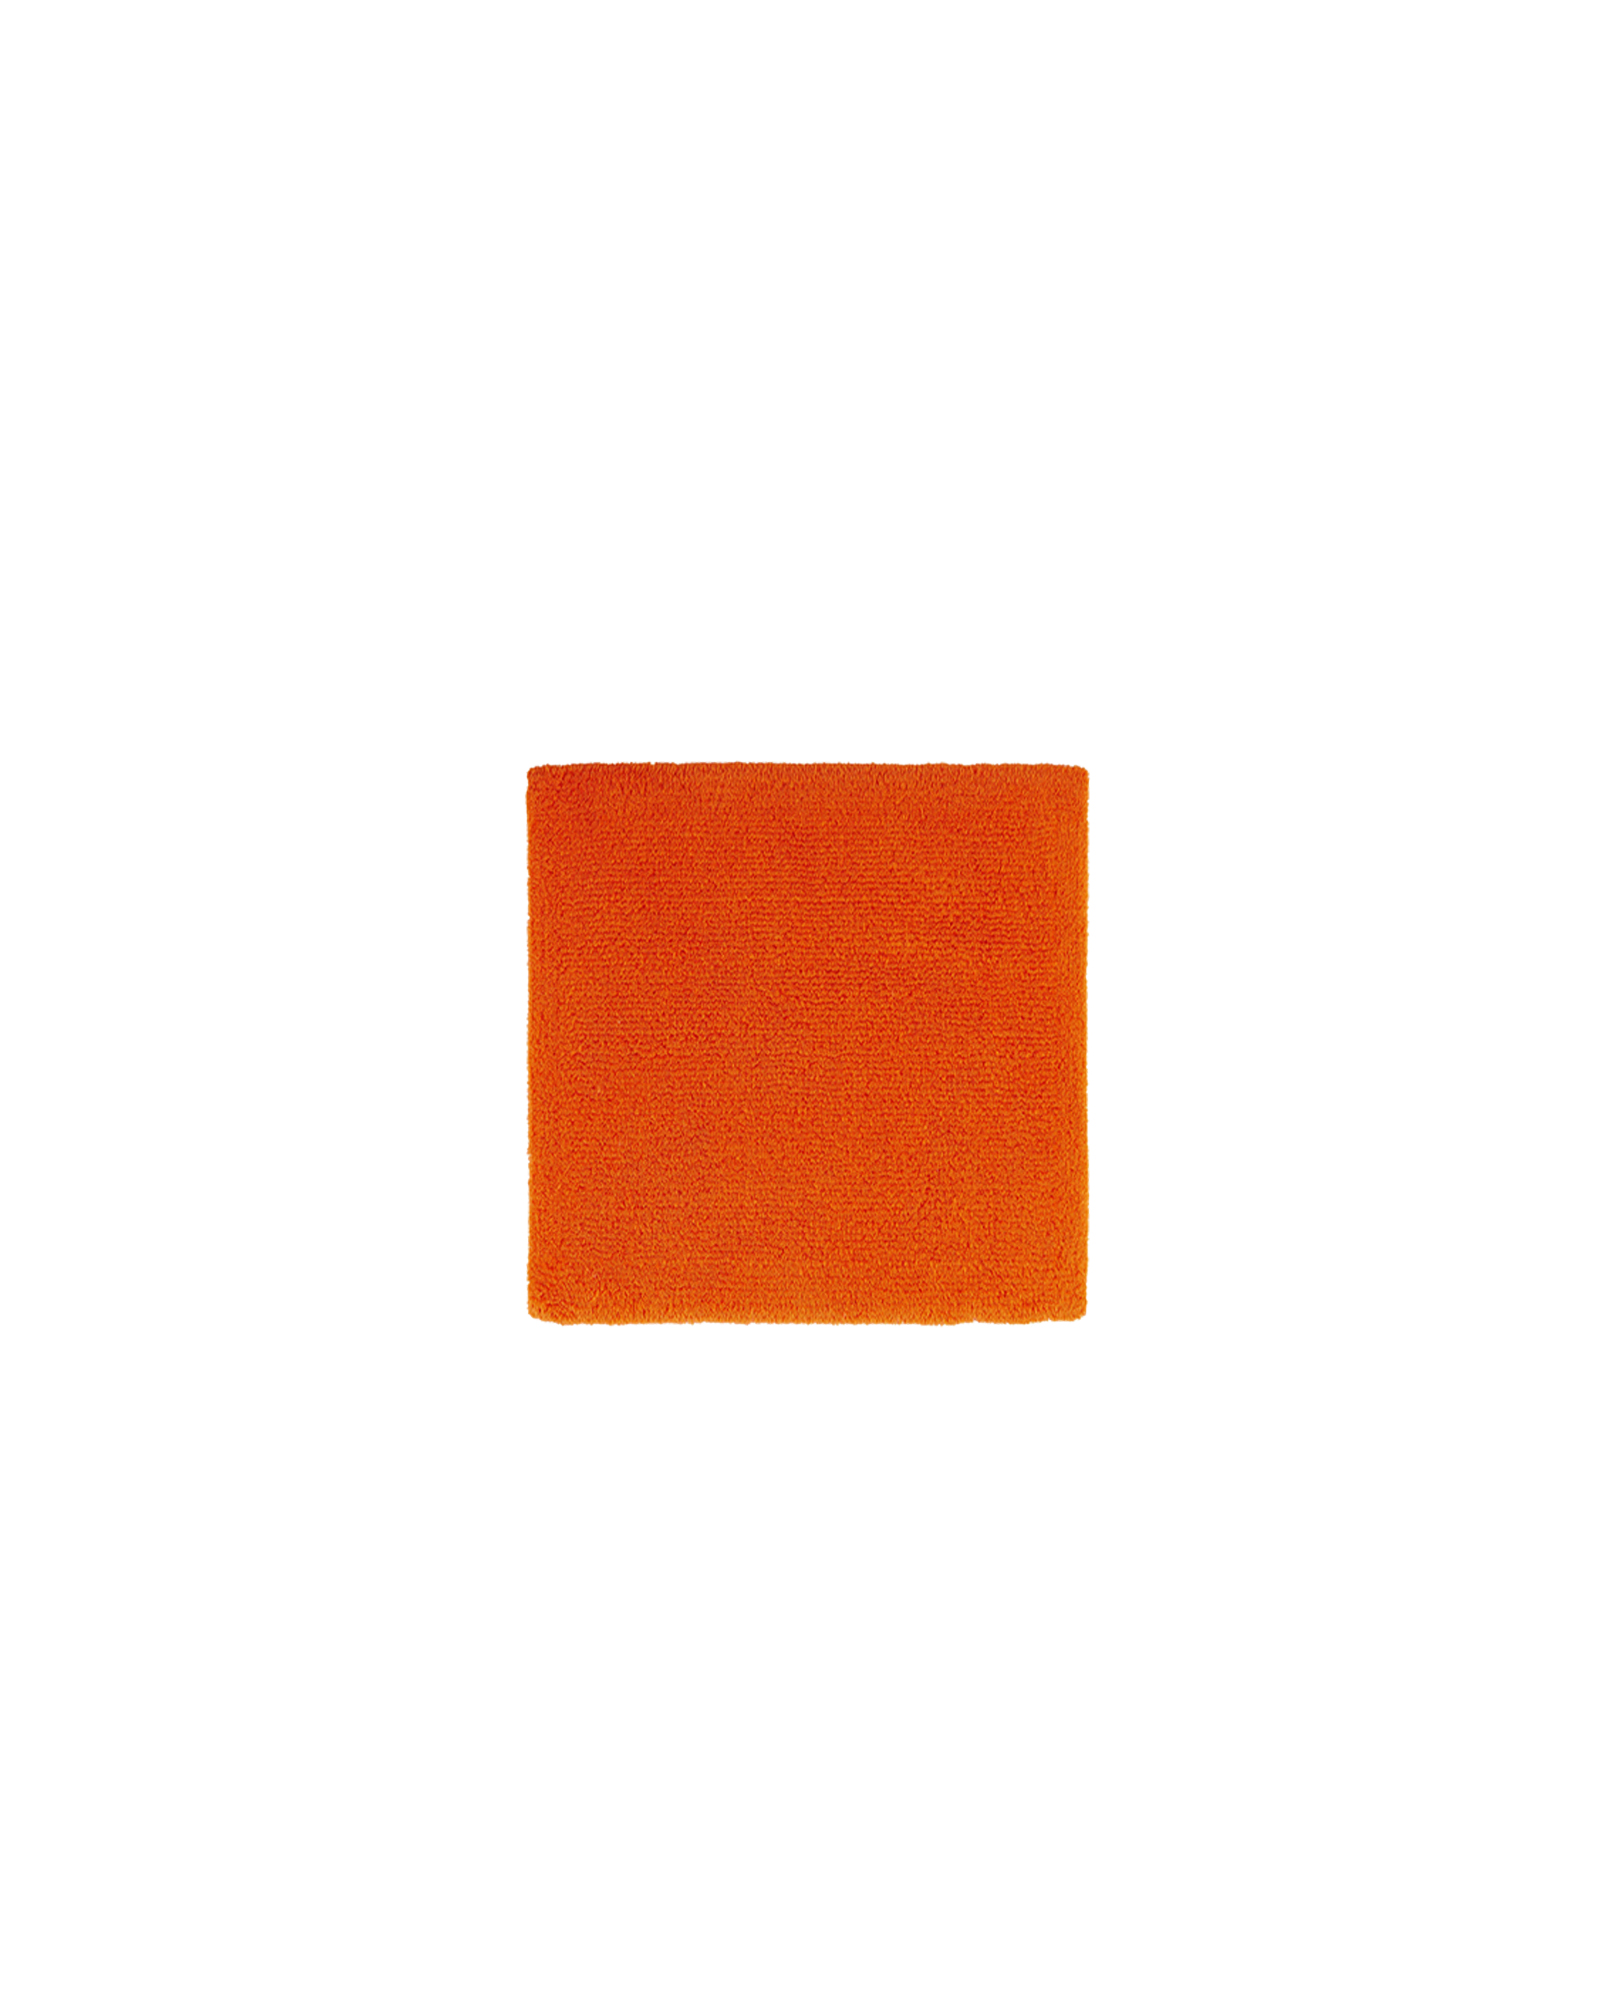 Abyss & Habidecor - Tapis de bain BAY 614 Tangerine - 60x60 cm - 614 Tangerine 